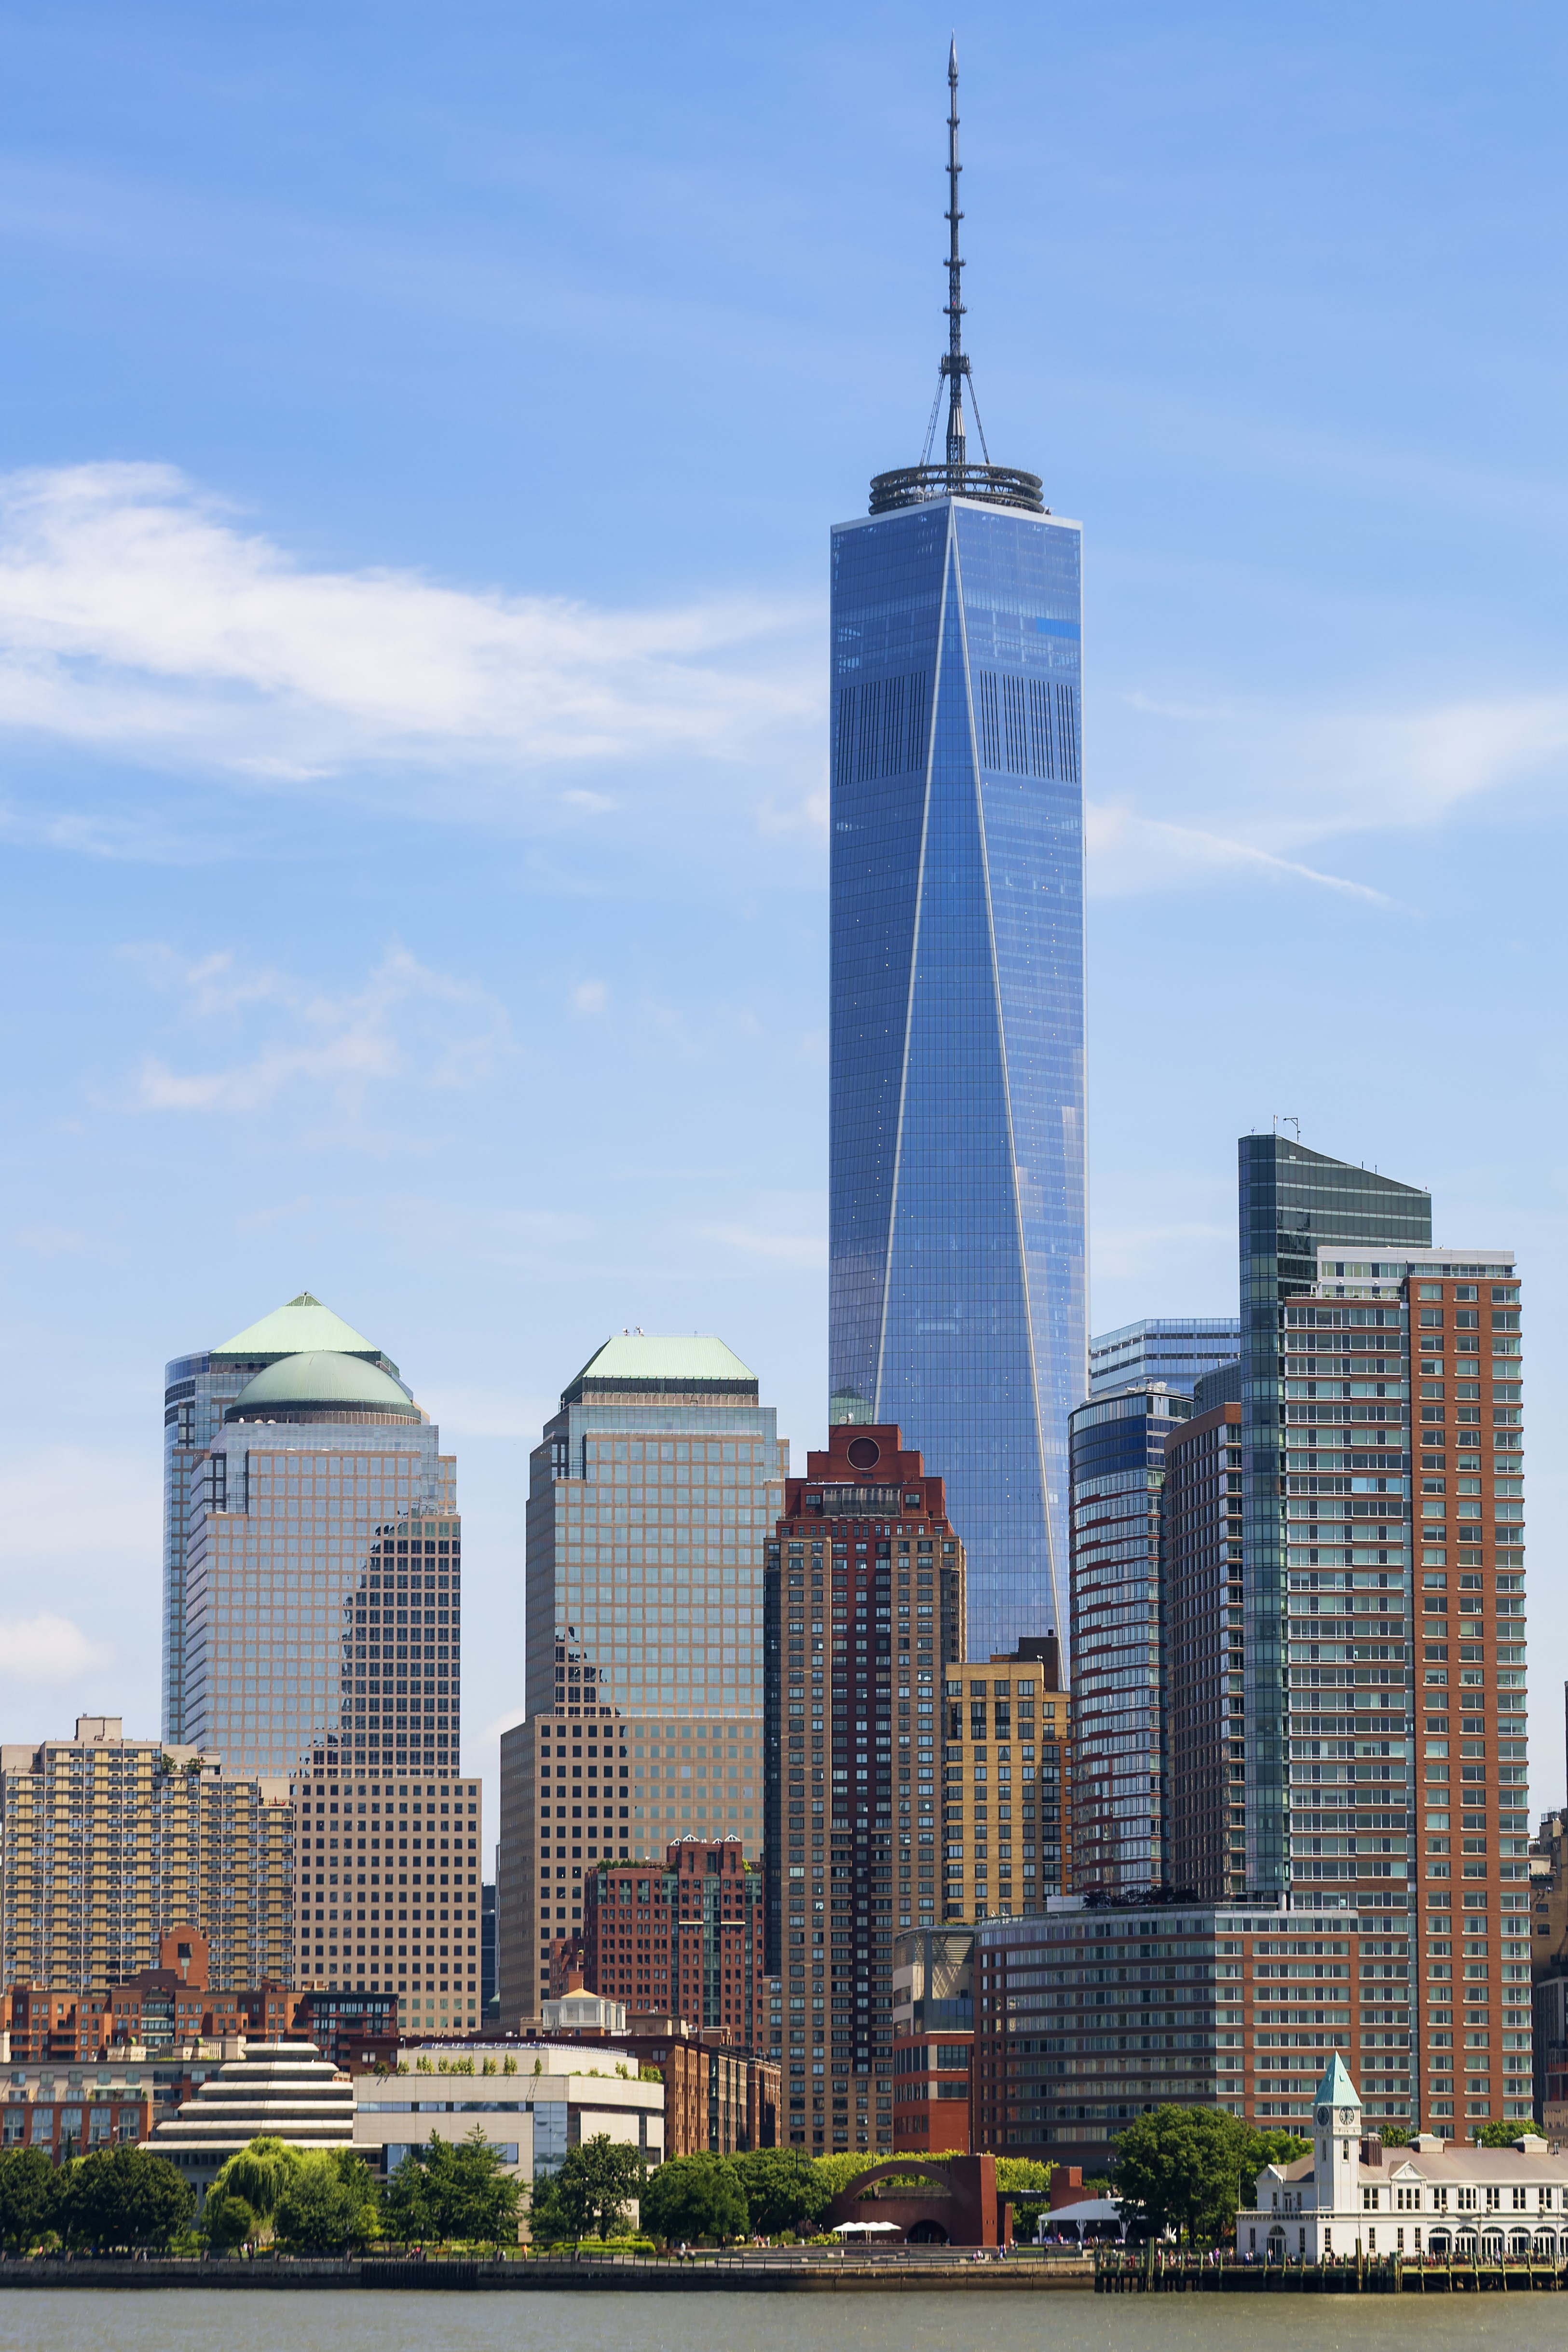 <a href="https://www.civilengineerdwg.com/"><img src="One World Trade Center.jpg" alt="Contoh Proyek Konstruksi Bangunan Gedung"></a>